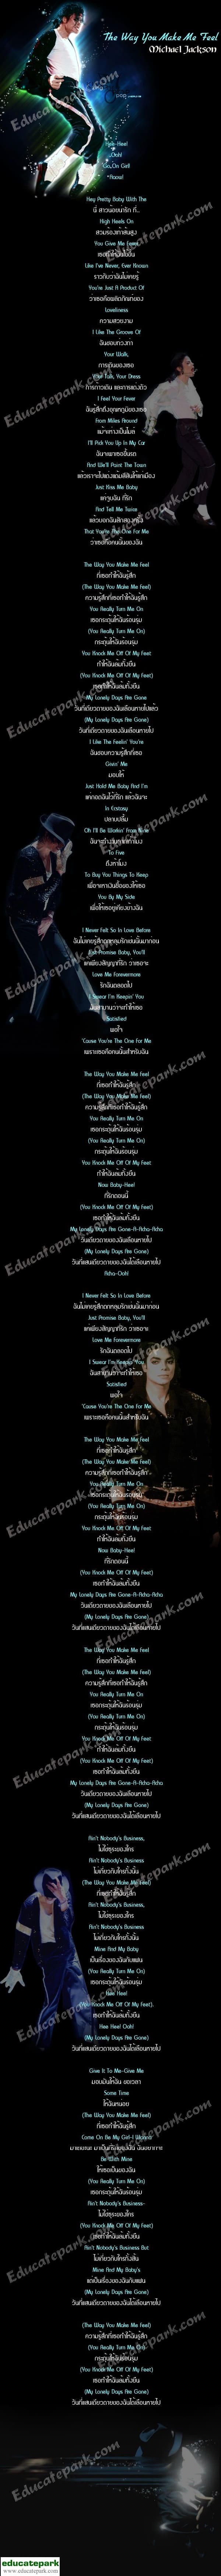 แปลเพลง The Way You Make Me Feel - Michael Jackson